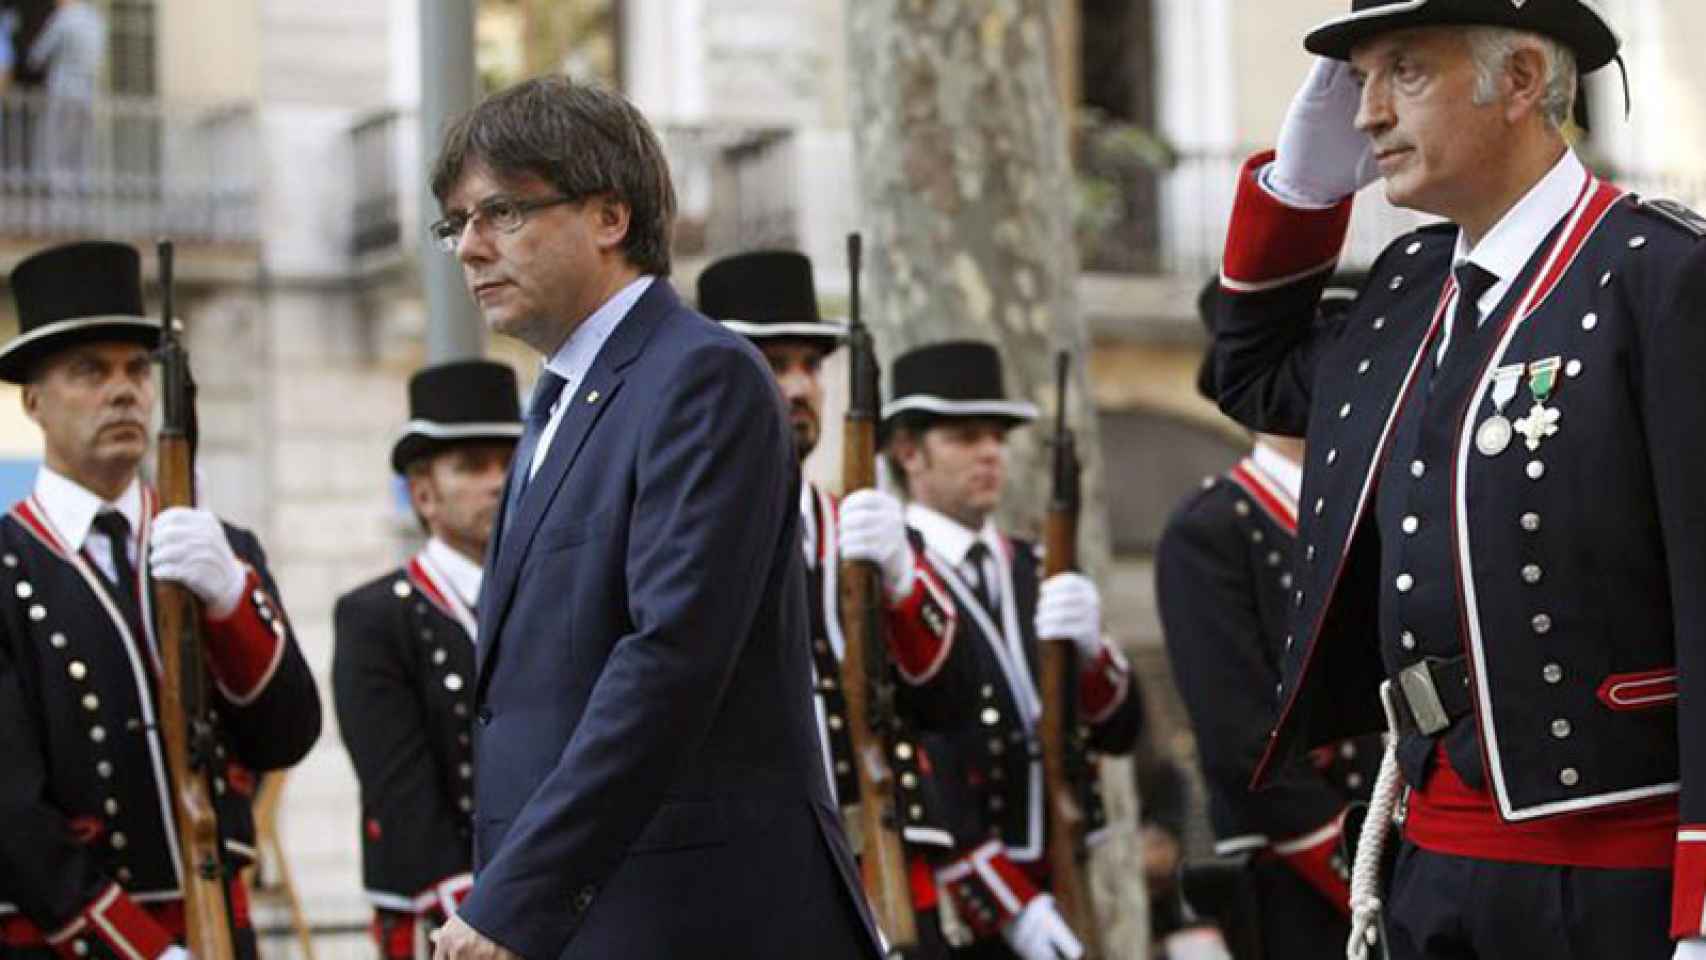 El presidente de la Generalitat, Carles Puigdemont, preside la tradicional ofrenda floral al monumento a Rafael Casanova en la Diada / EFE